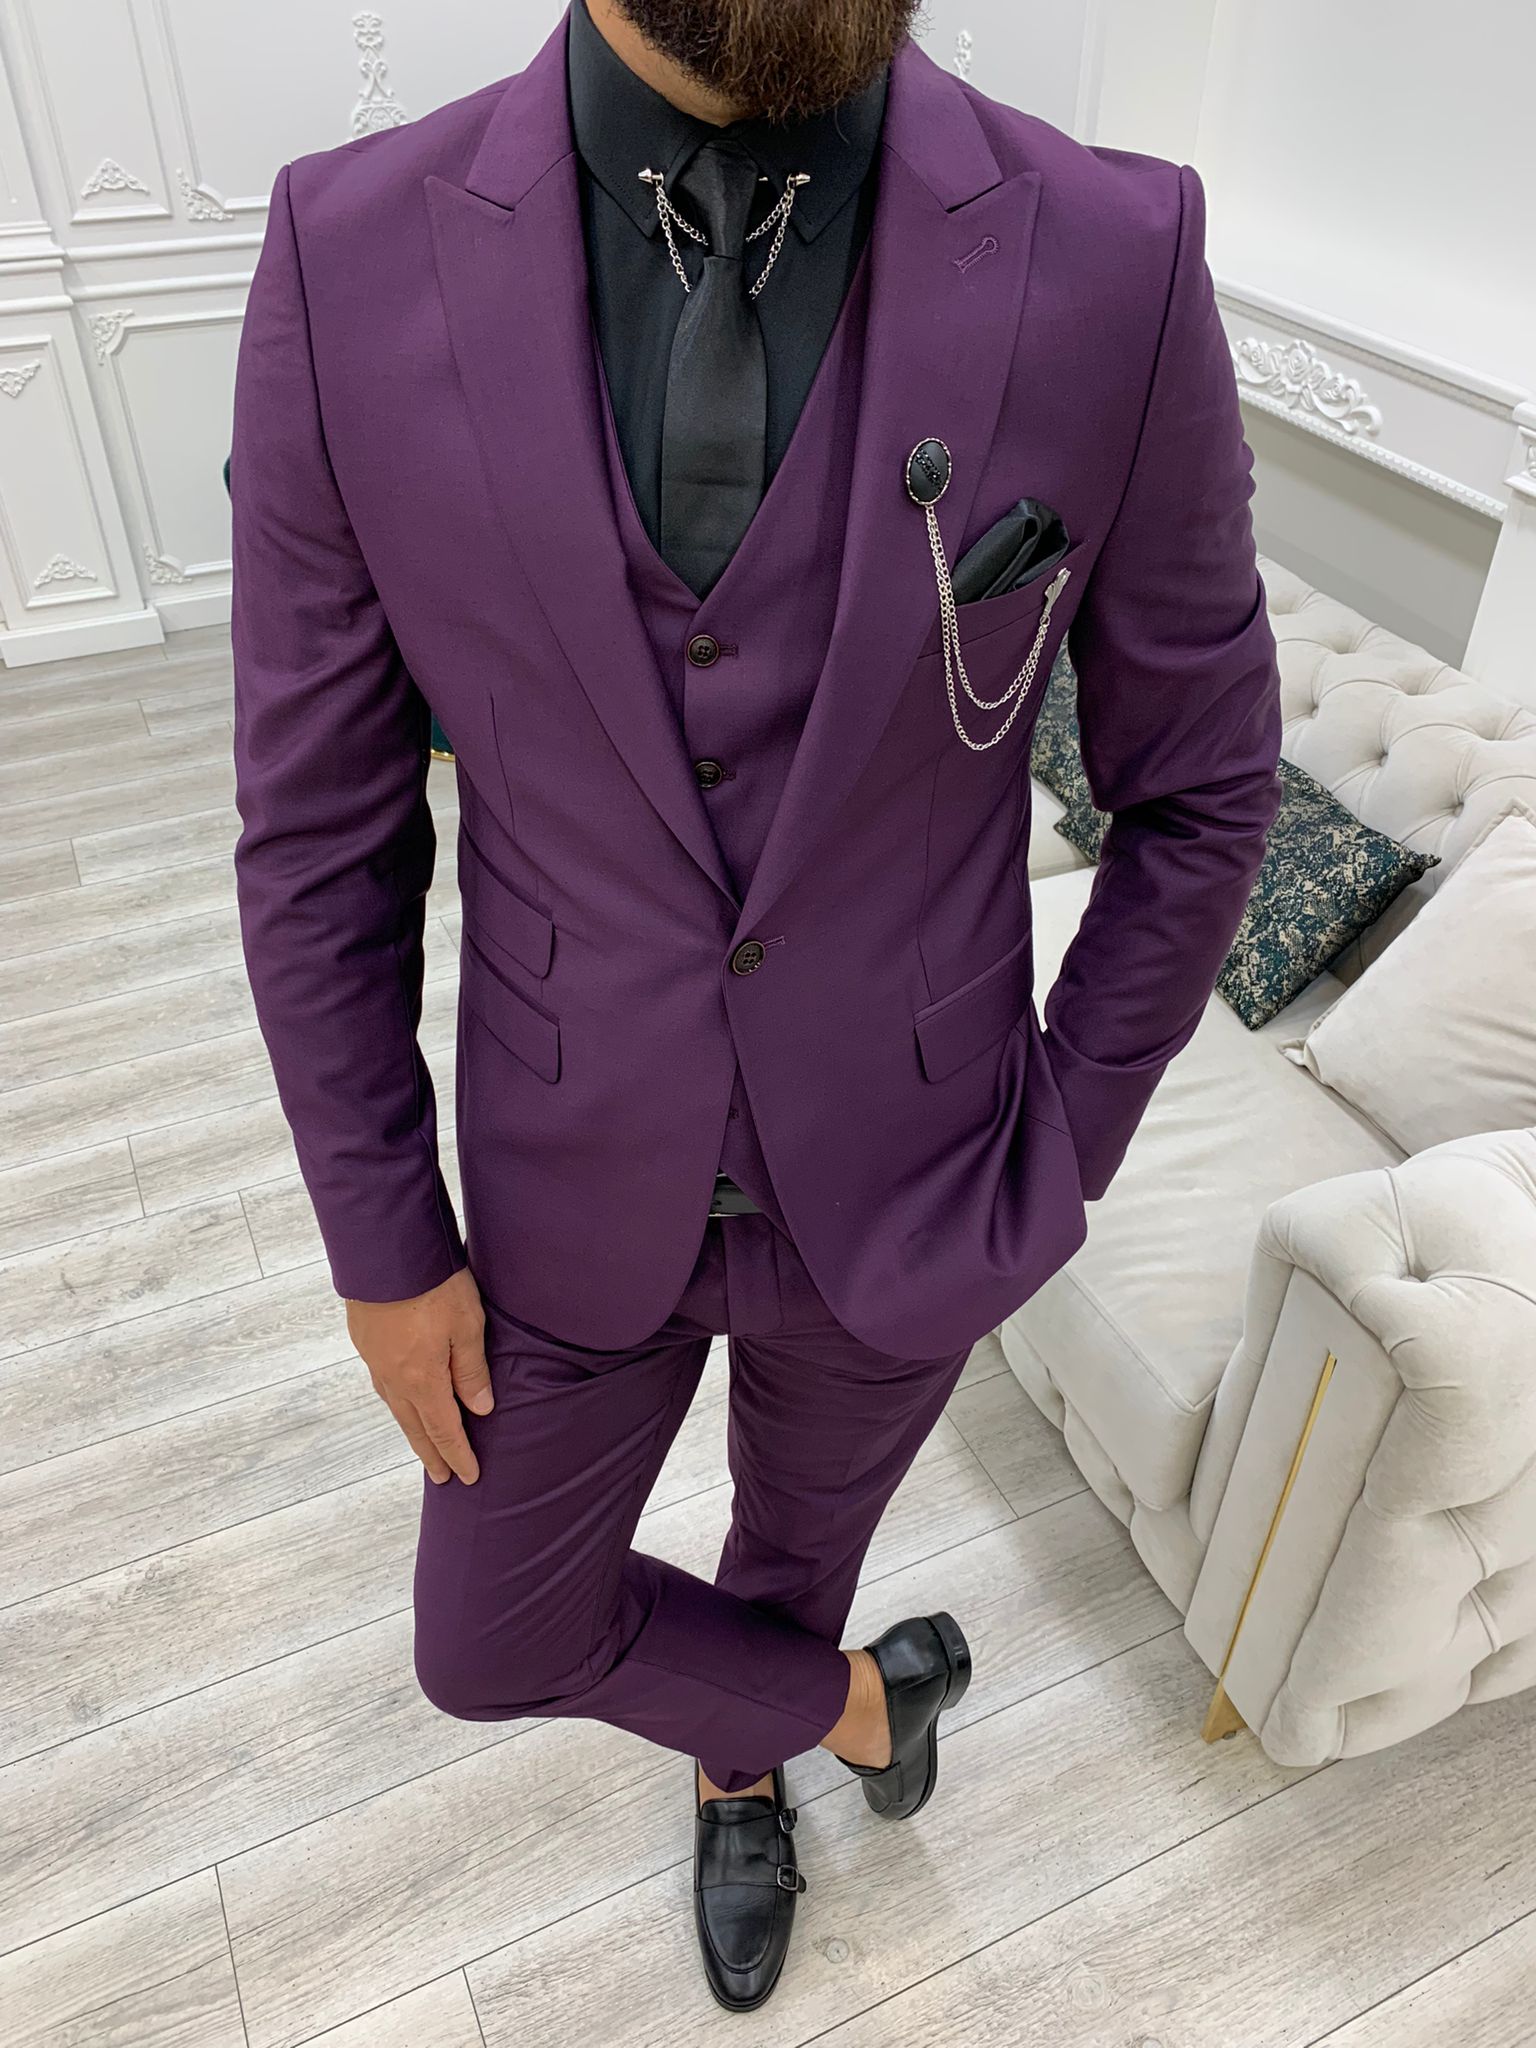 https://www.hollomen.com/cdn/shop/products/rio-grande-purple-suit-549723.jpg?v=1693388309&width=1946